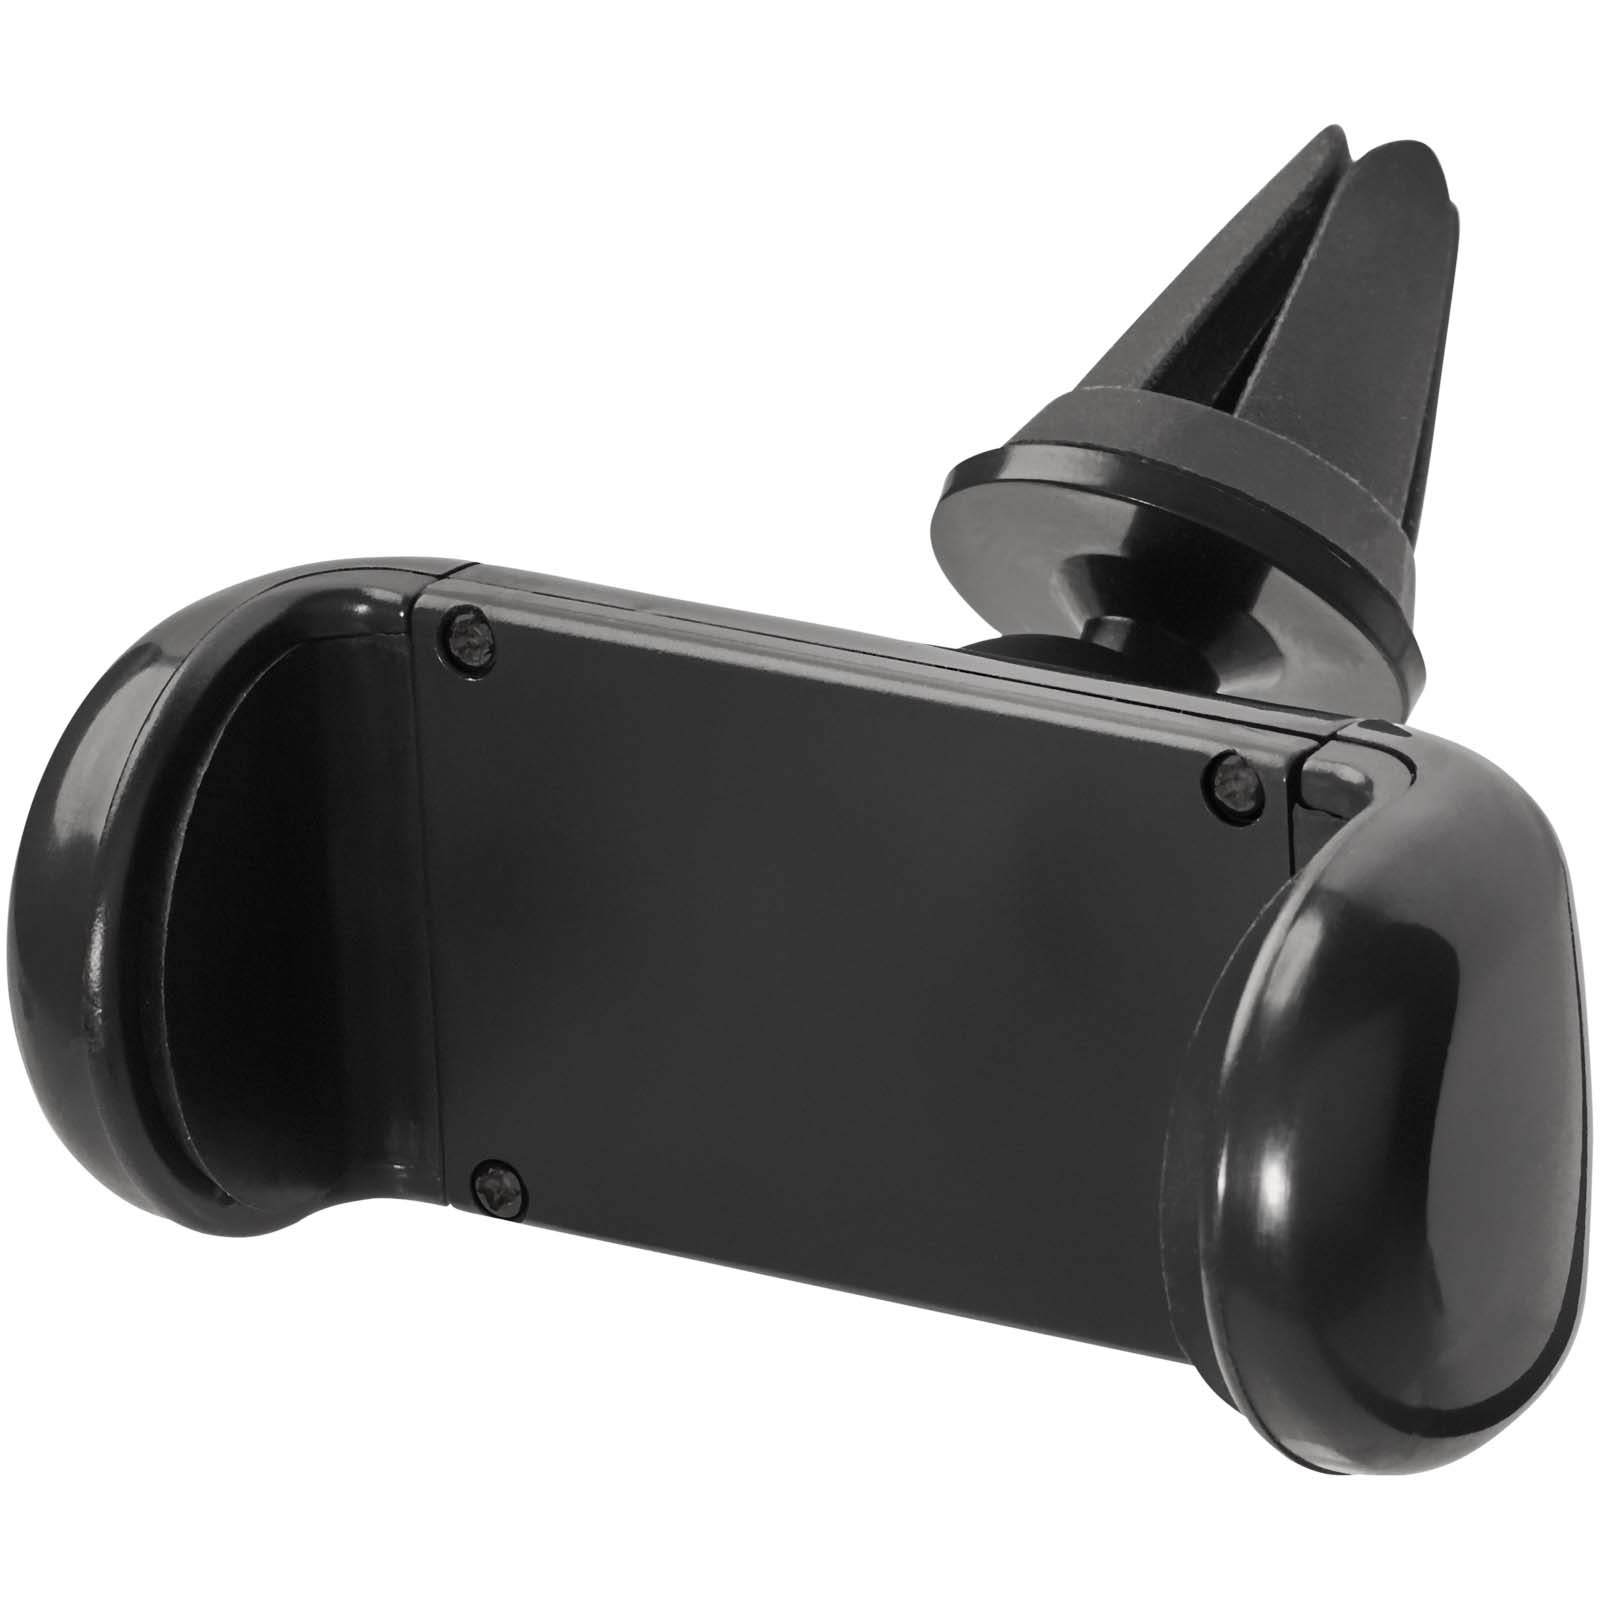 Accessoires pour téléphone et tablette publicitaires - Support de téléphone portable pour voiture Grip - 0